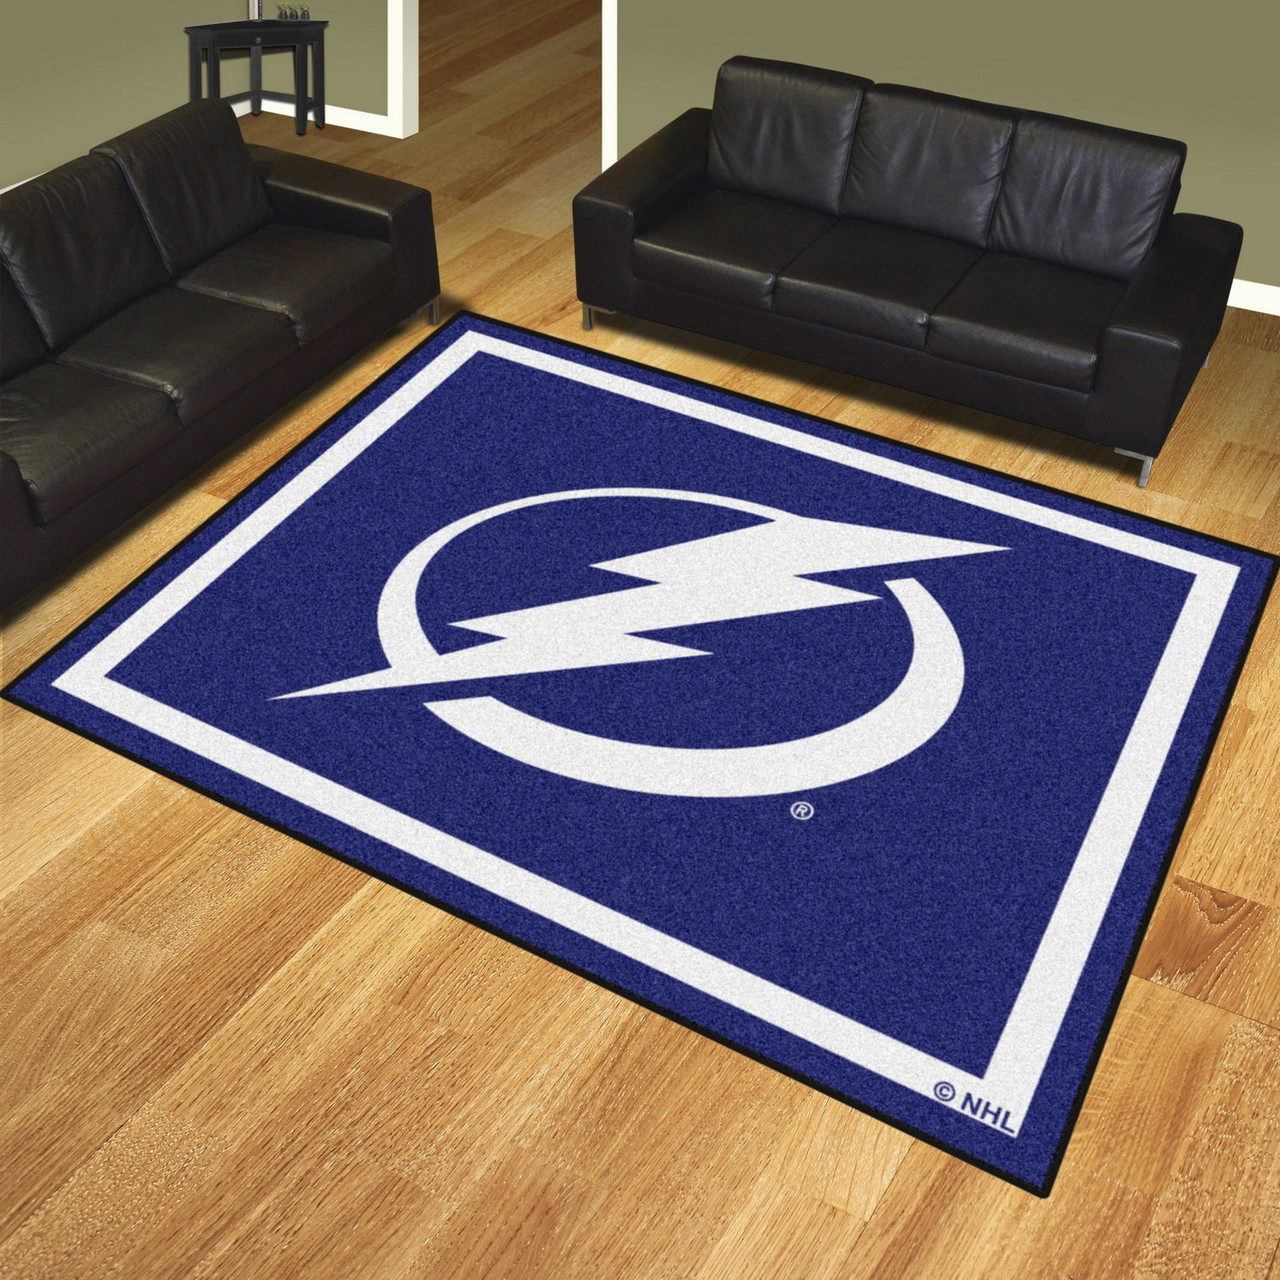 8' x 10' Tampa Bay Lightning Blue Rectangle Rug Floor Rug Area Rug NHL